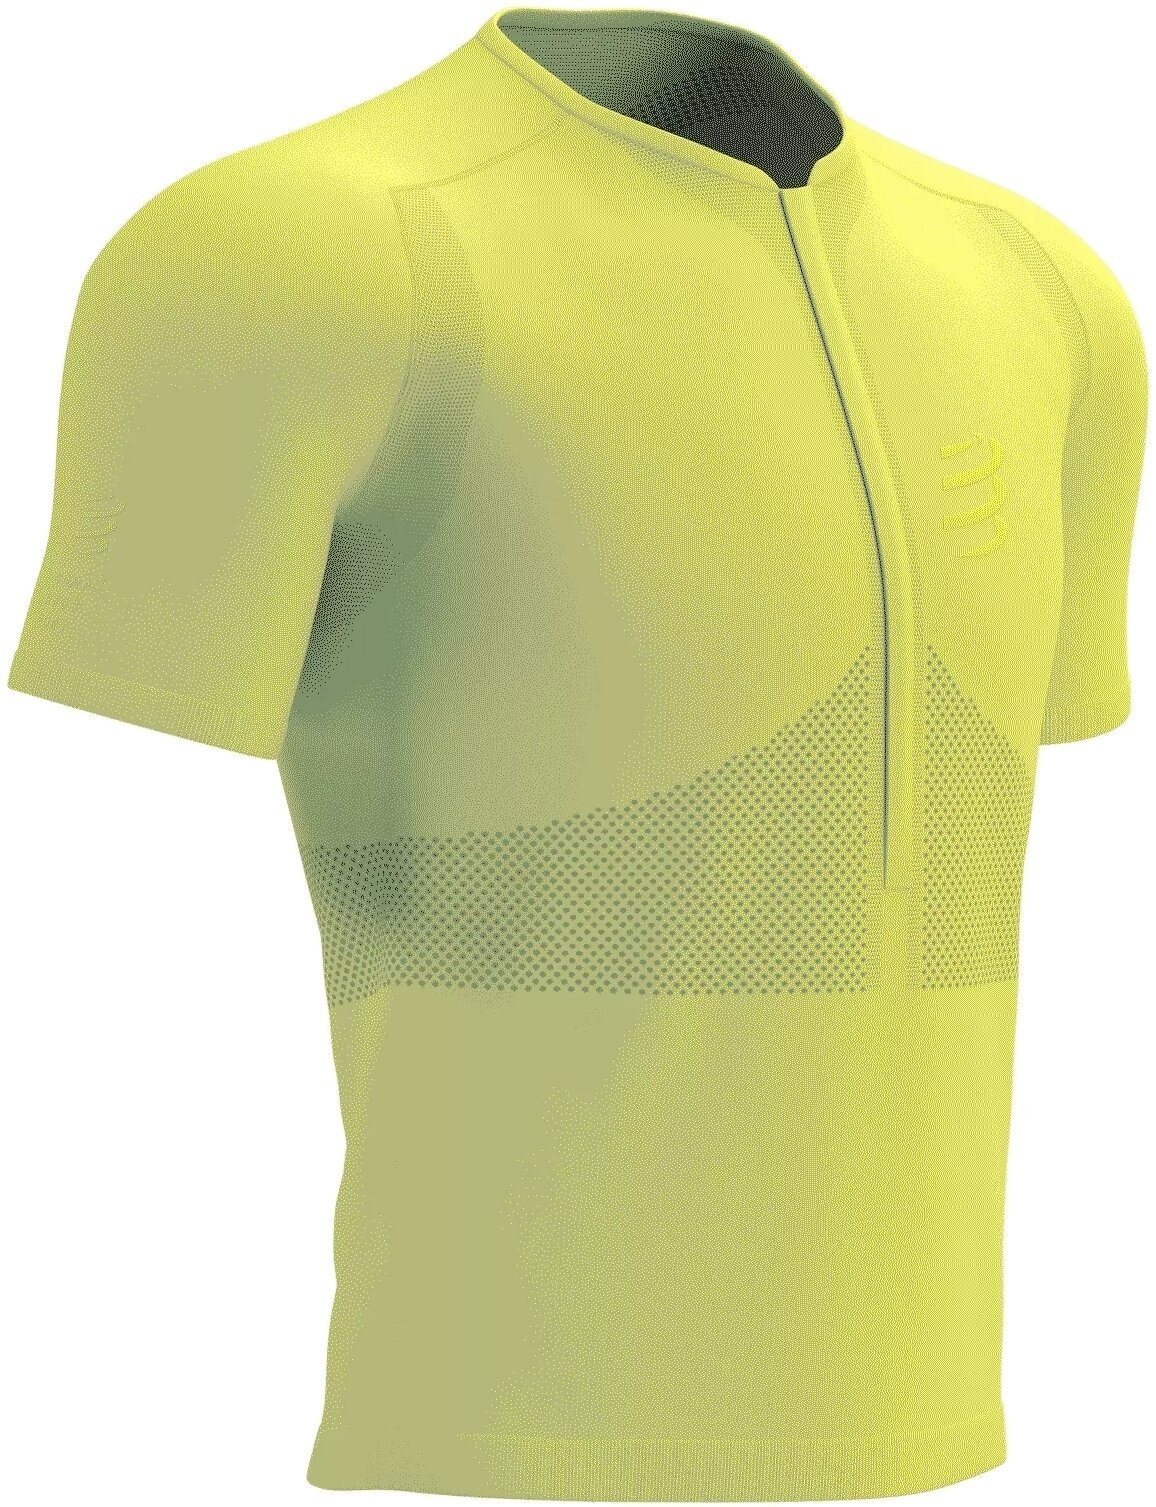 Laufshirt mit Kurzarm
 Compressport Trail Half-Zip Fitted SS Top Green Sheen/Safety Yellow M Laufshirt mit Kurzarm